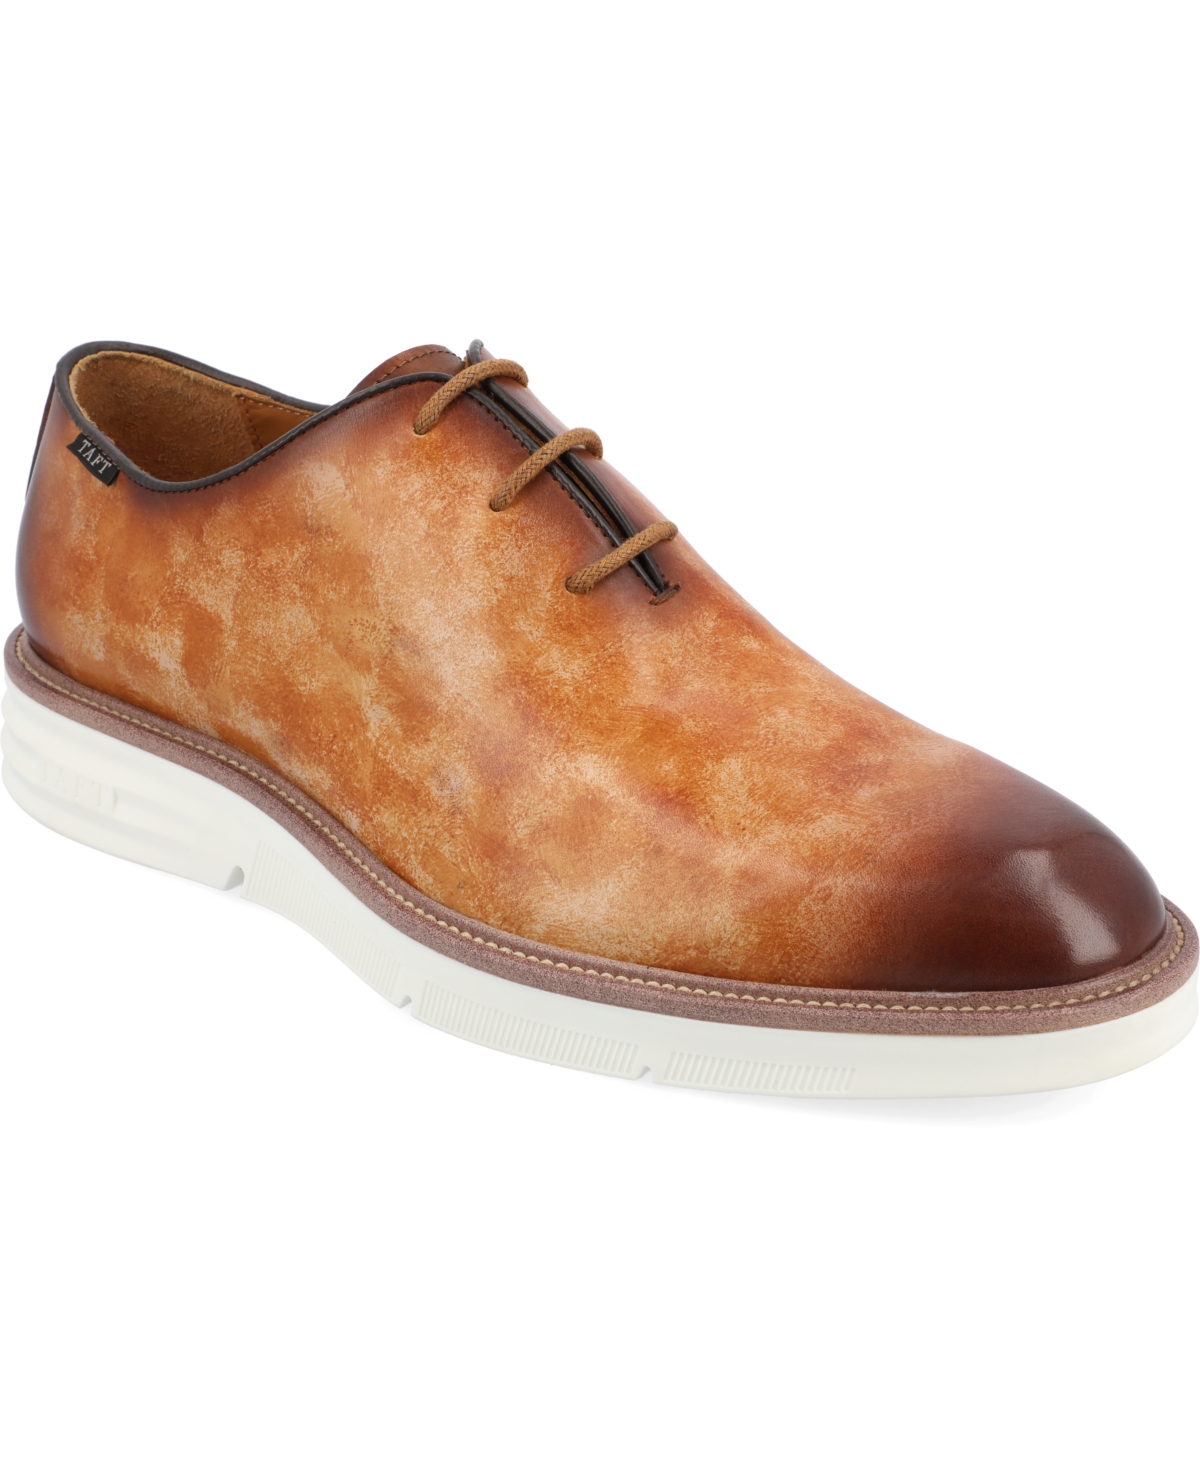 Taft 365 Men's Model 101 Wholecut Oxford Shoes Men's Shoes